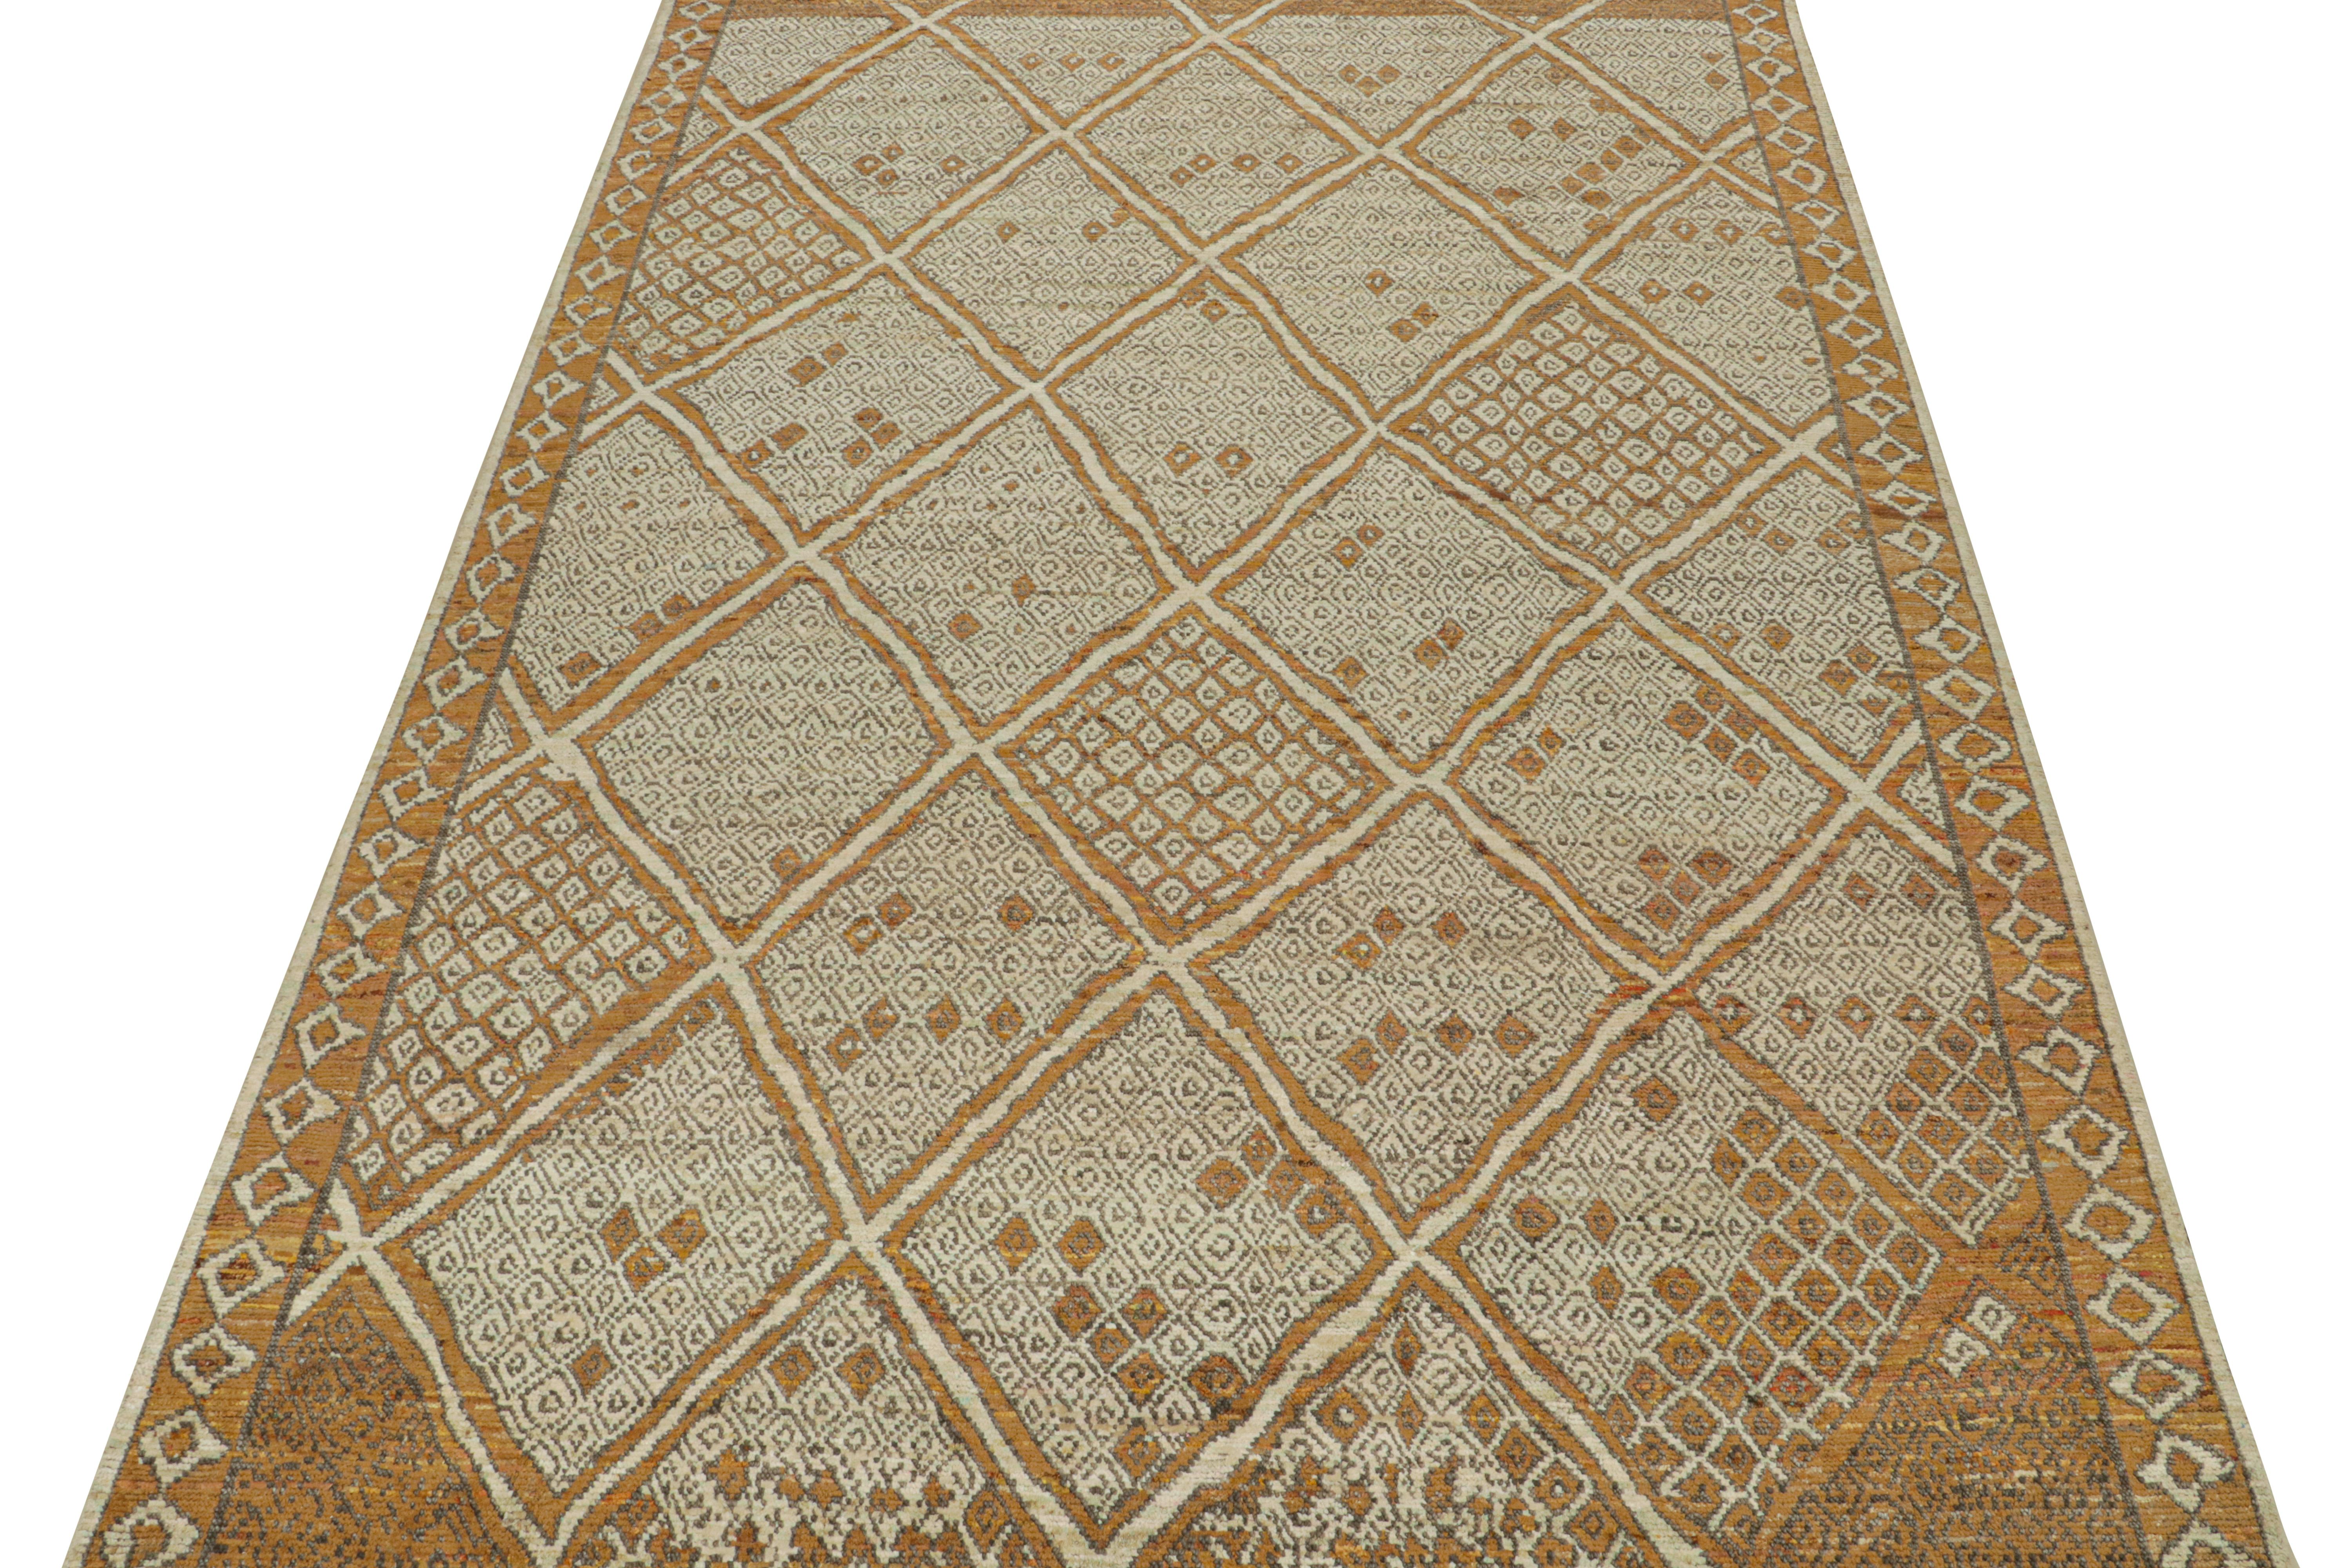 Ce tapis 10x14 est un nouvel ajout à la collection de tapis marocains de Rug & Kilim. Noué à la main en laine et en soie, son design reprend la sensibilité tribale classique dans une nouvelle qualité moderne.

Ce design particulier se caractérise